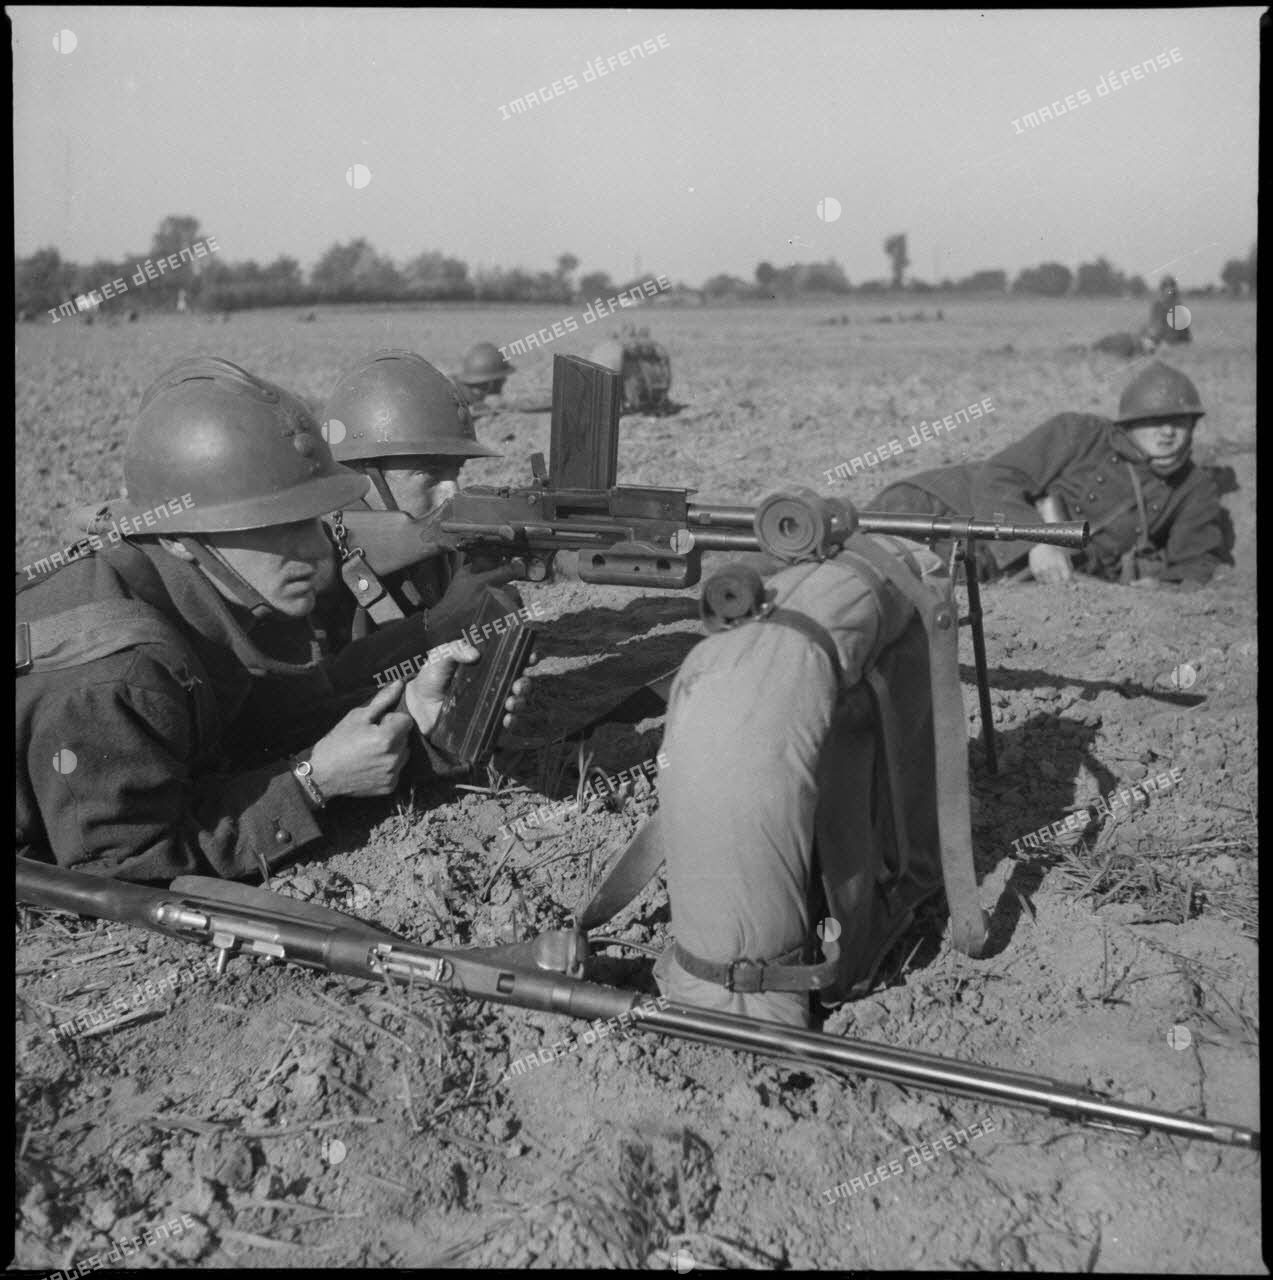 Fantassins du 310e régiment d'infanterie (RI) servant un fusil-mitrailleur (FM) M-24/29 au cours d'un entraînement, peut-être dans le secteur défensif de Lille.